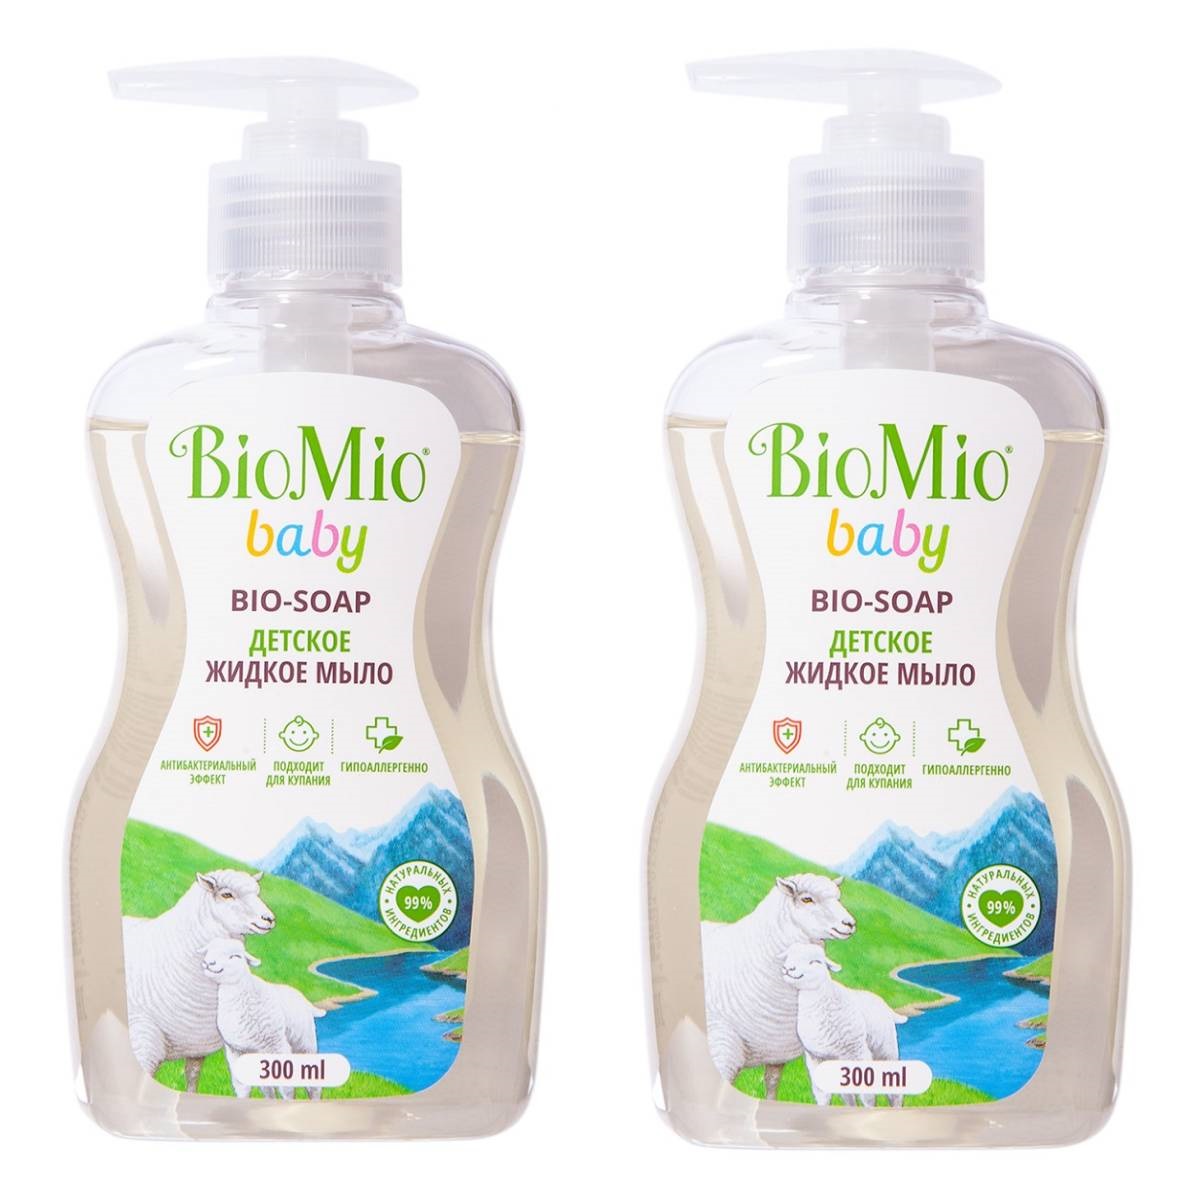 BioMio Детское жидкое мыло, 2 х 300 мл (BioMio, Мыло) цена и фото